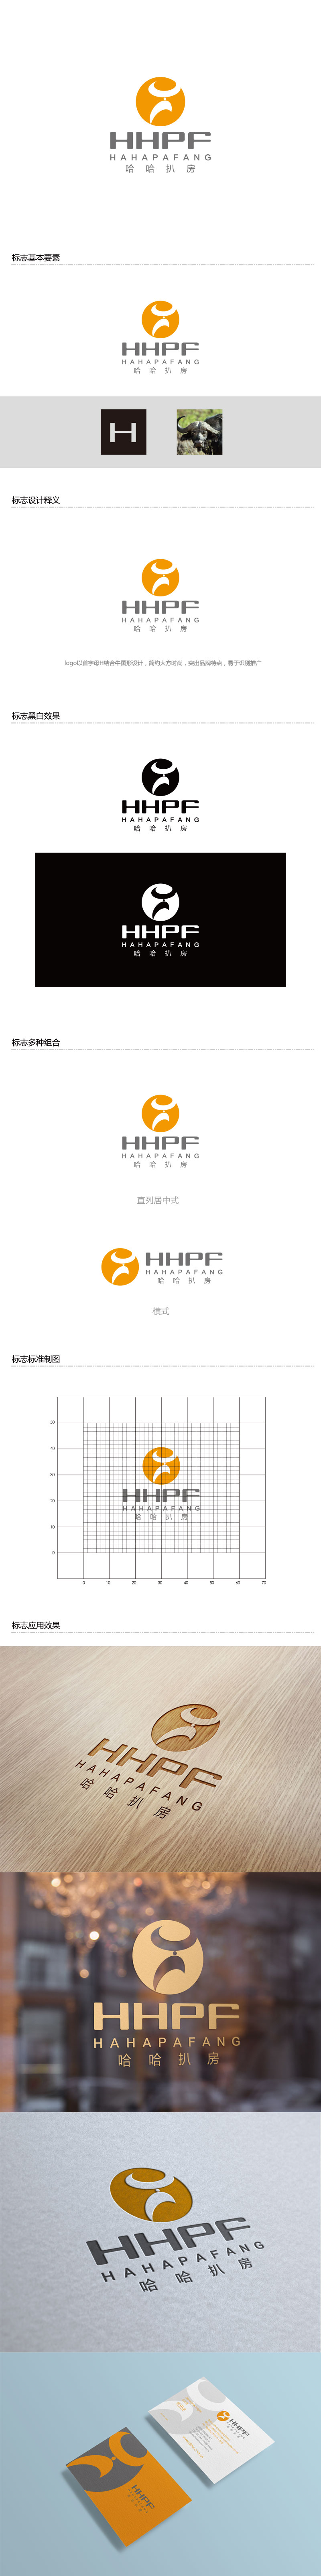 孙金泽的哈哈扒房logo设计